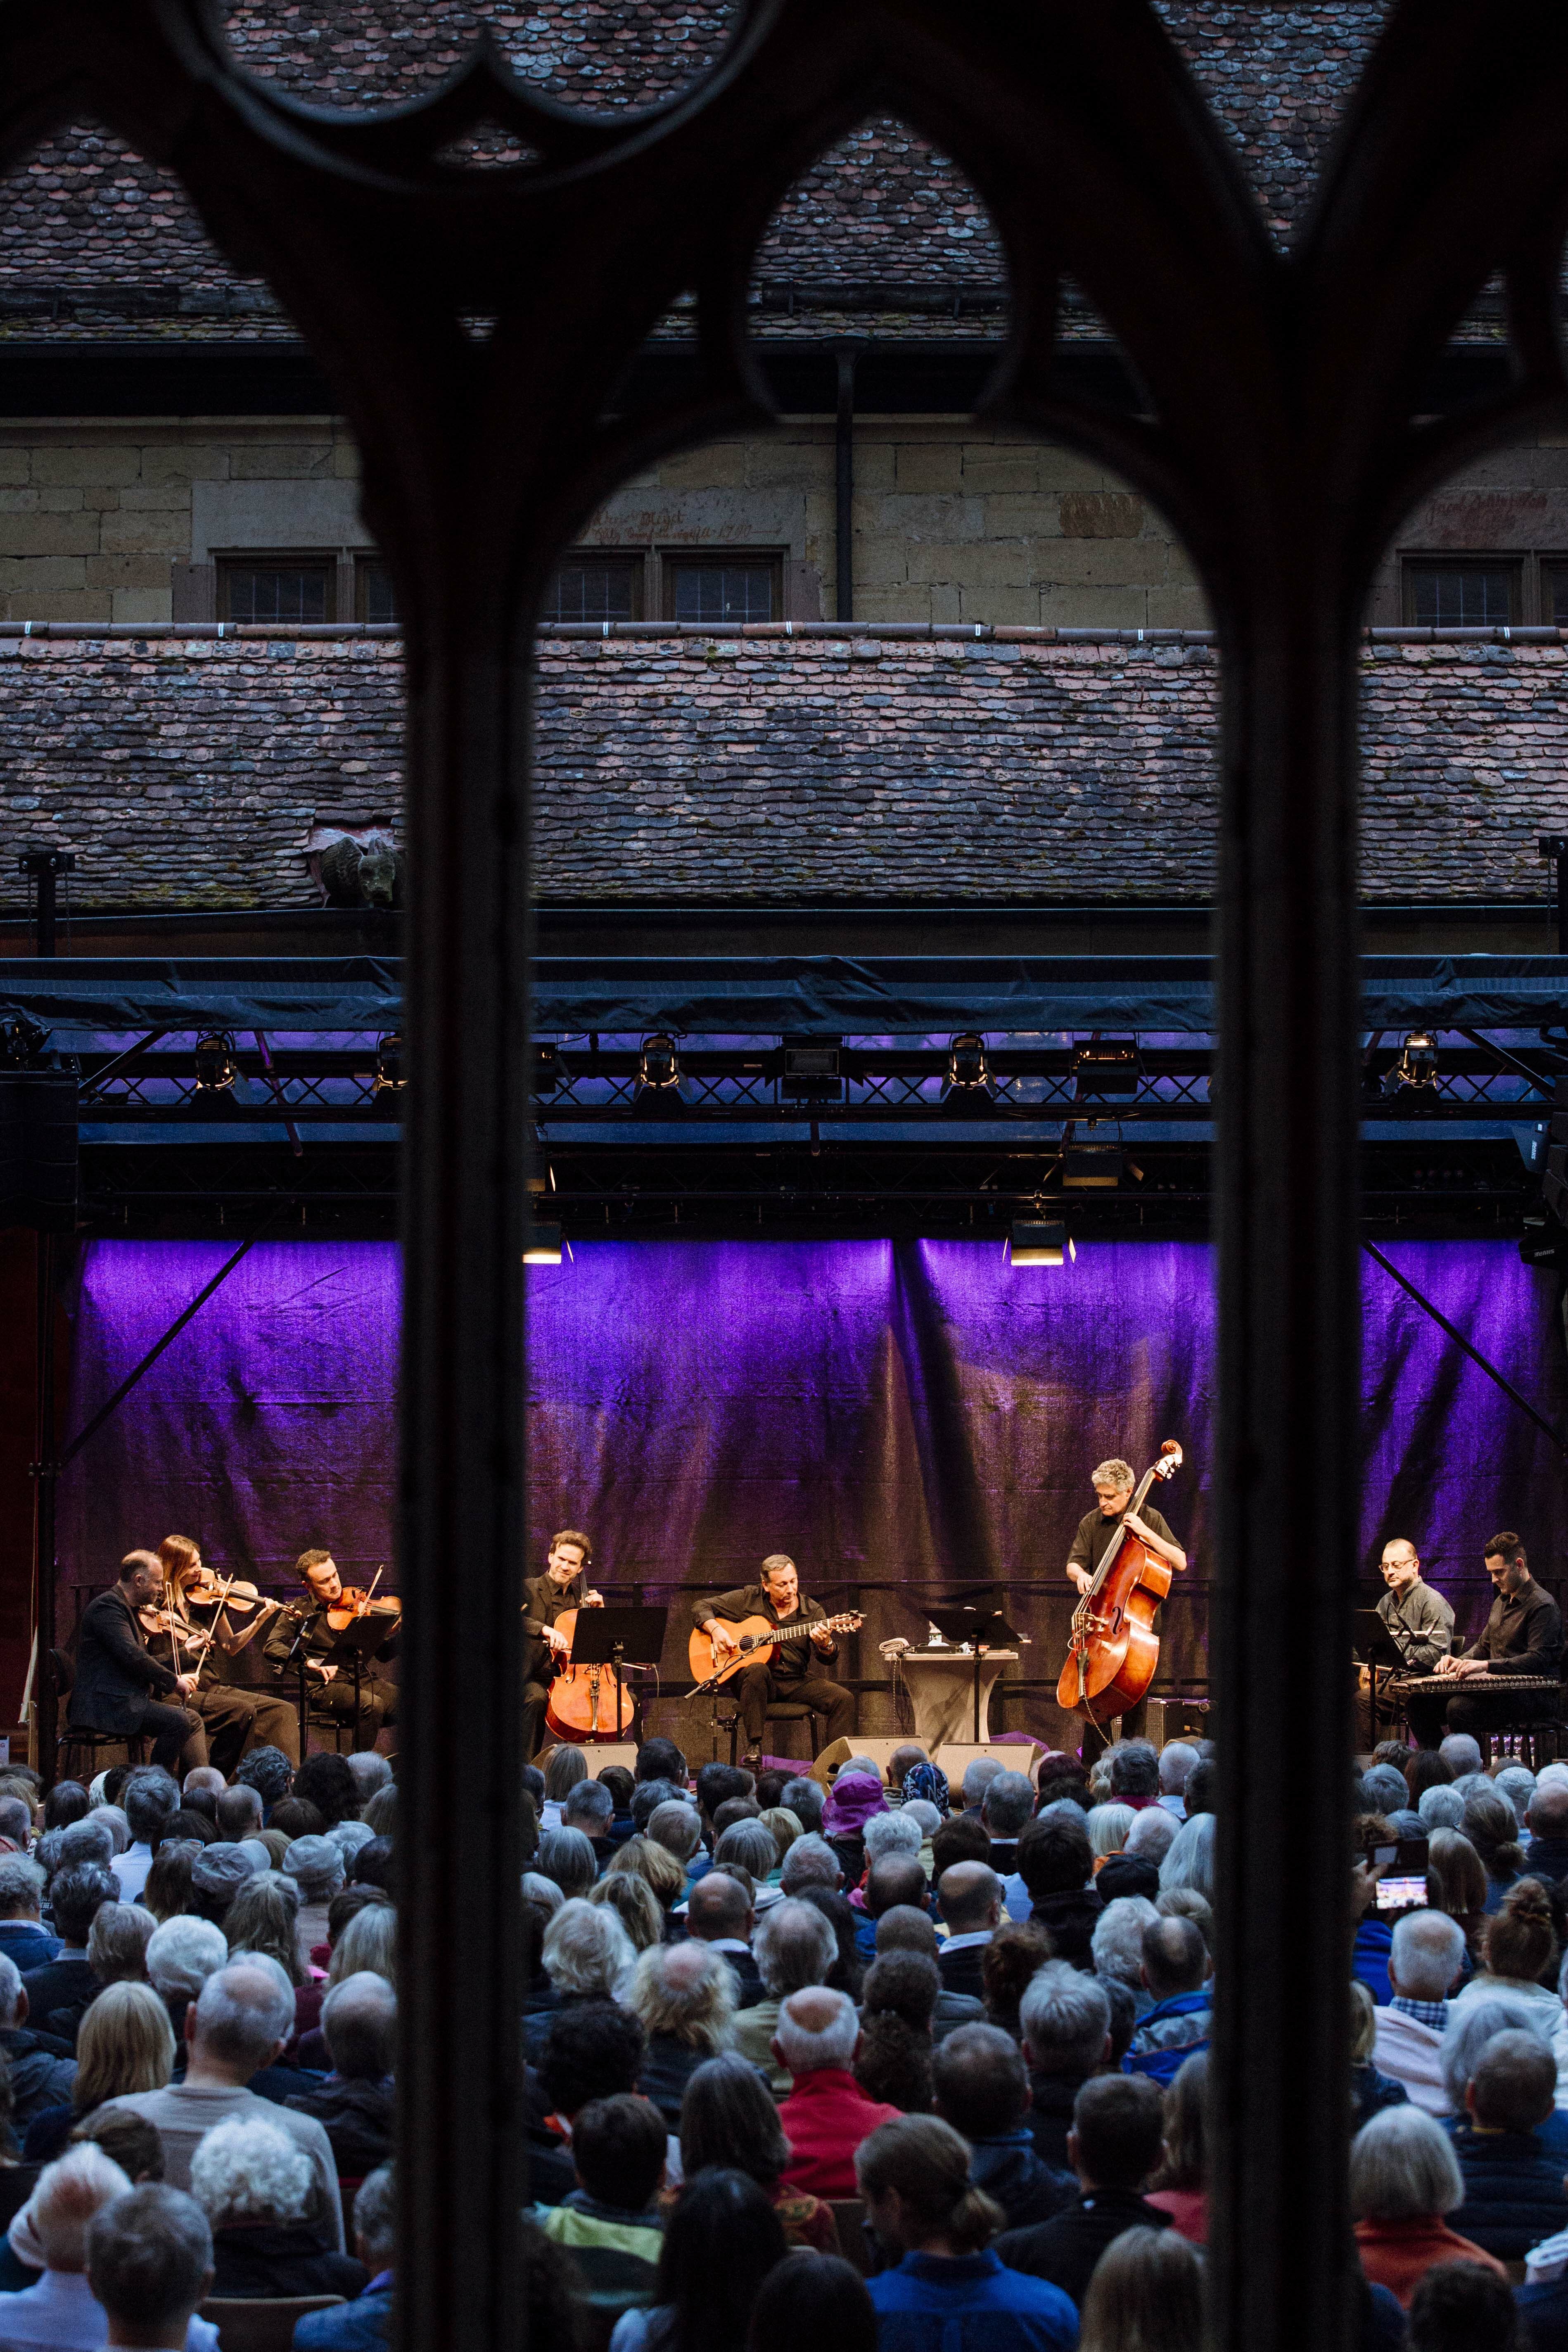 Blick durch Fenstersäulen einer Kirche auf eine Menschenmenge vor einer Bühne mit Musikern